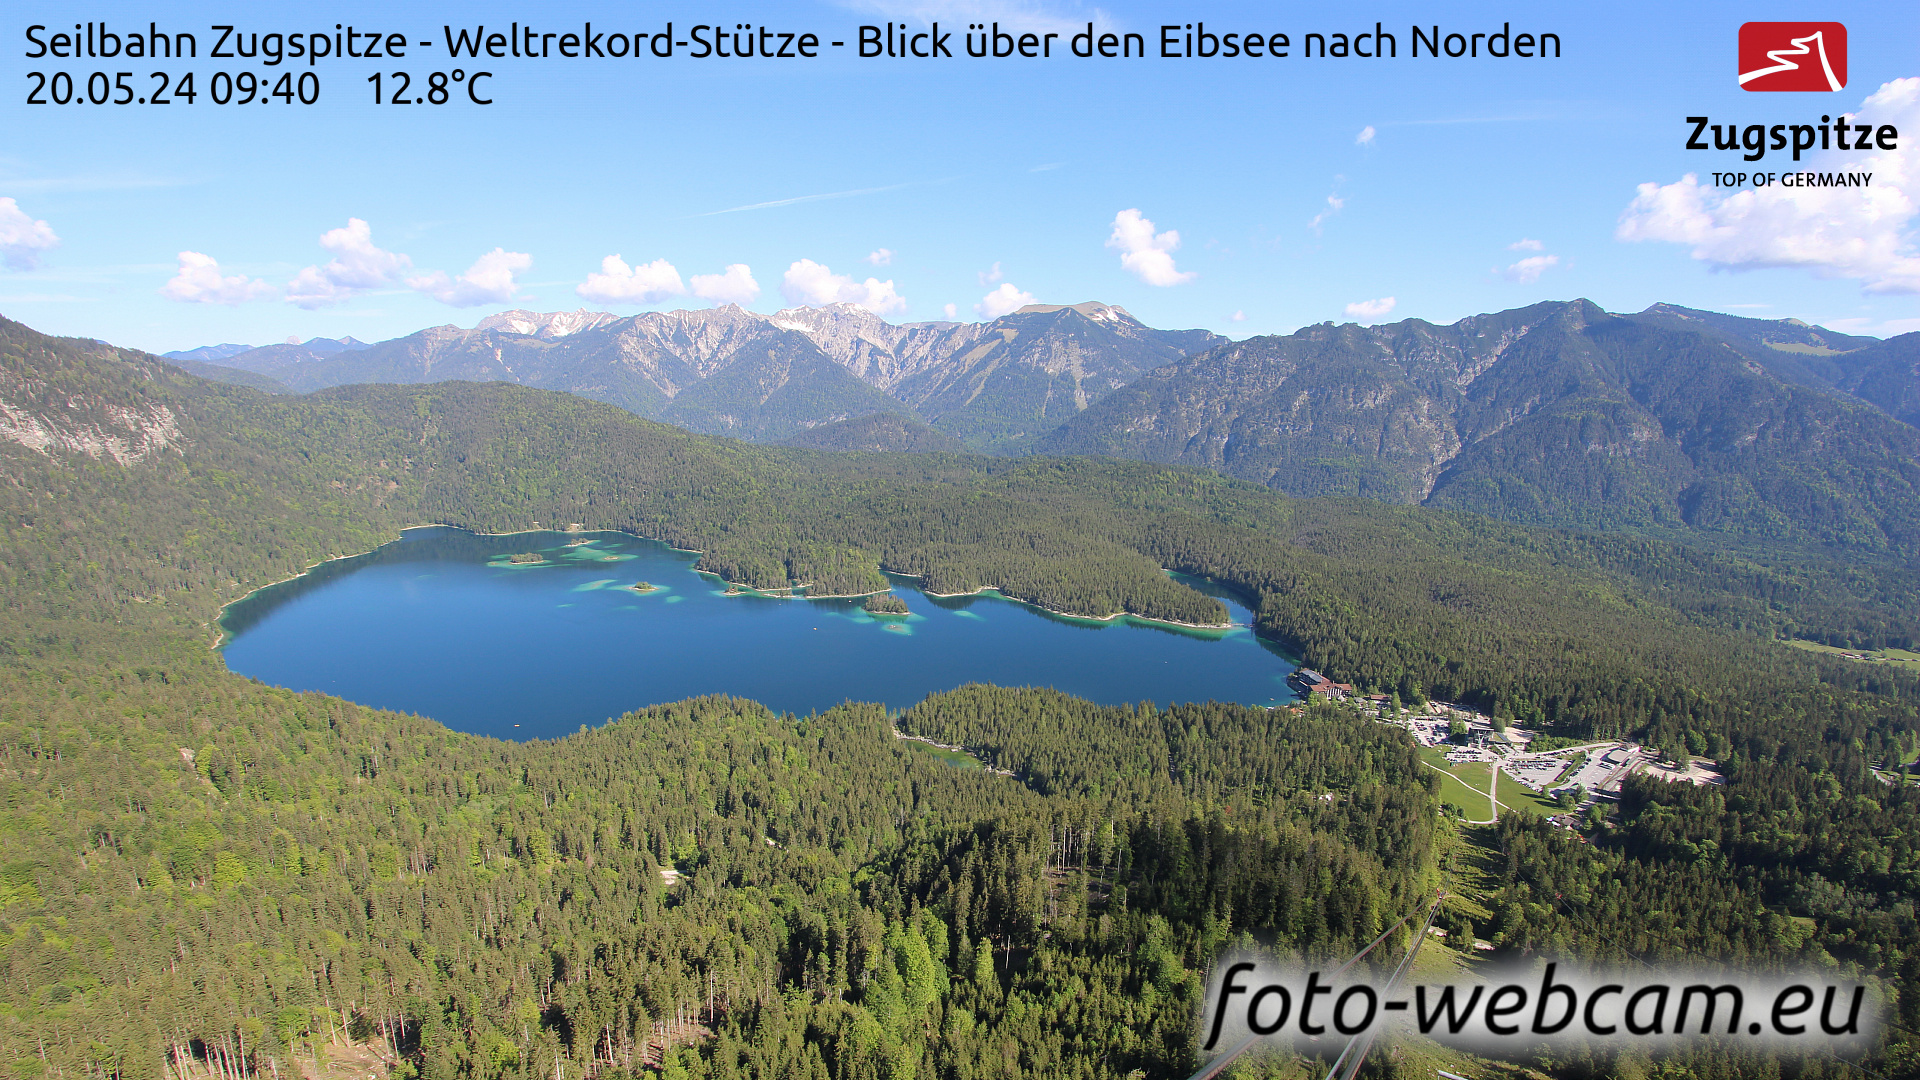 Zugspitze So. 09:49